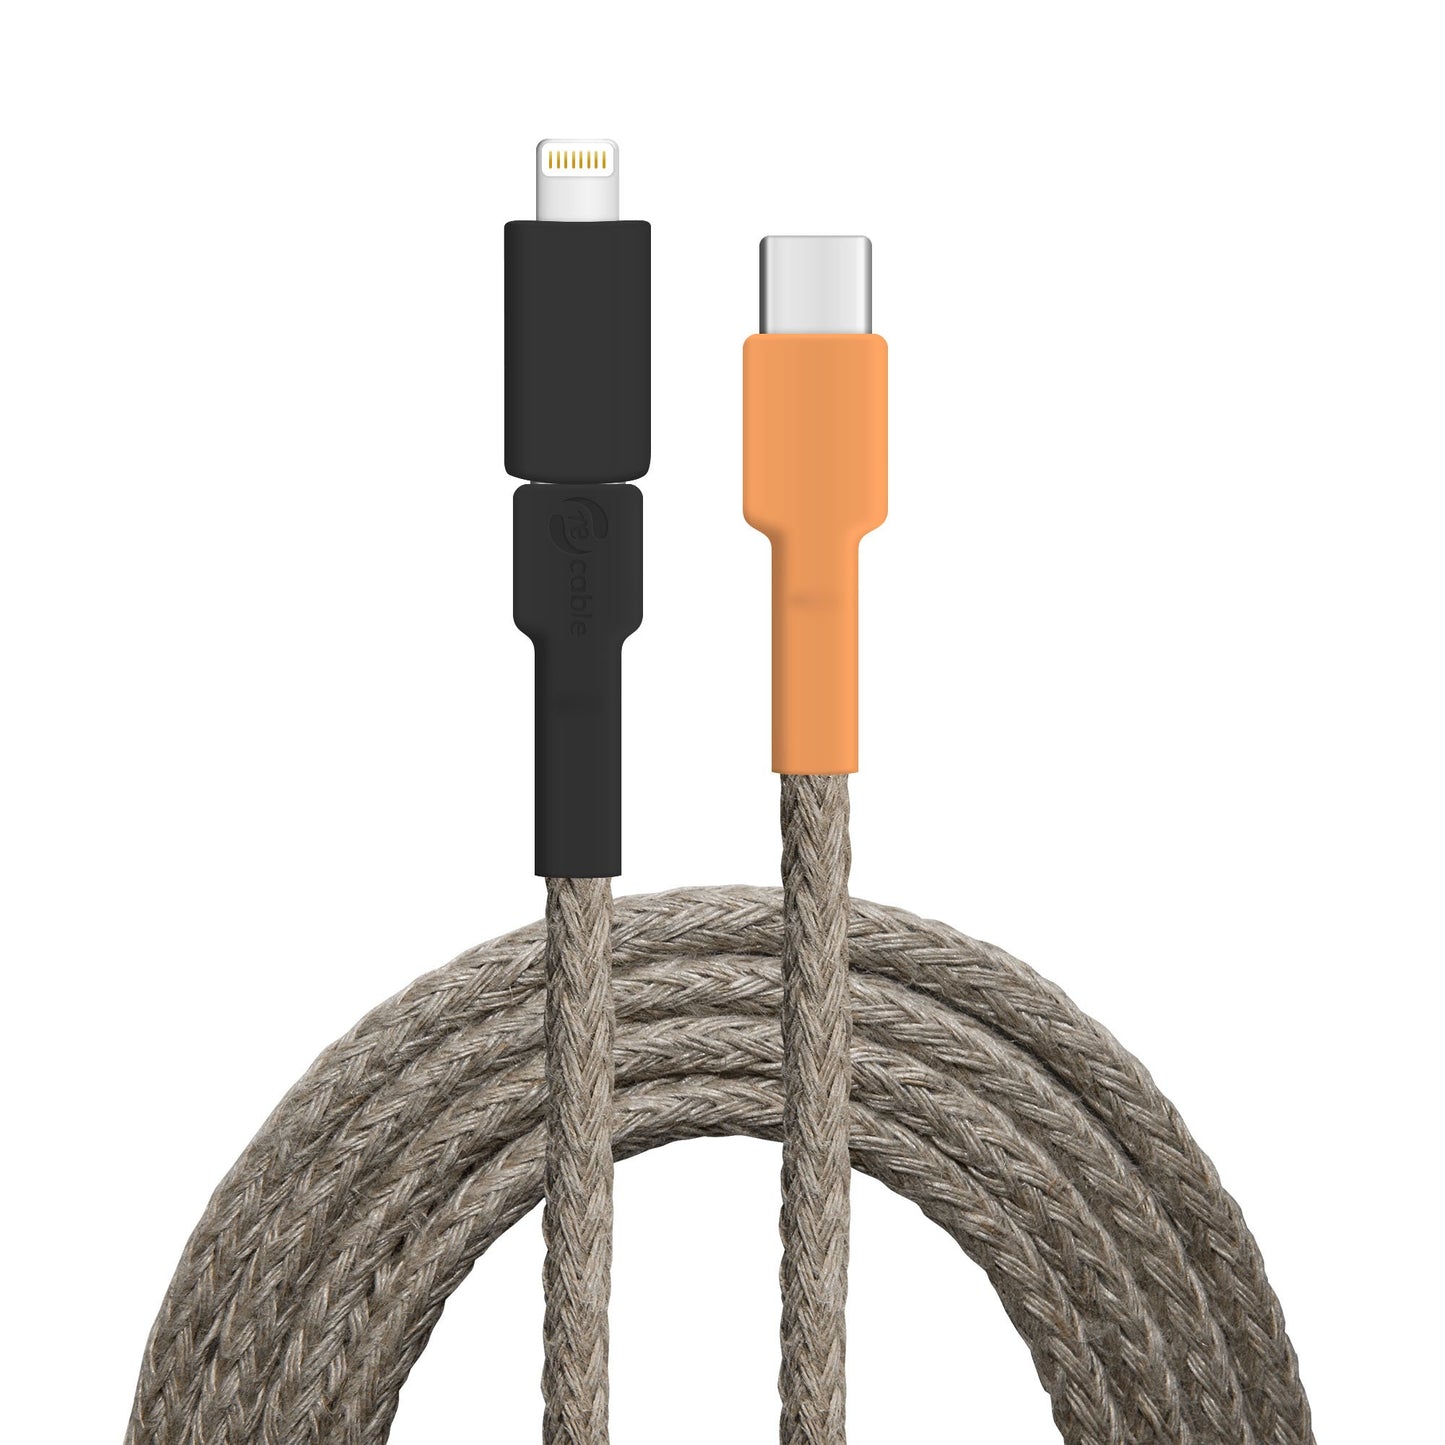 USB-Kabel, Design: Wasser­hahn, Anschlüsse: USB C auf Micro-USB mit Lightning Adapter (verbunden)